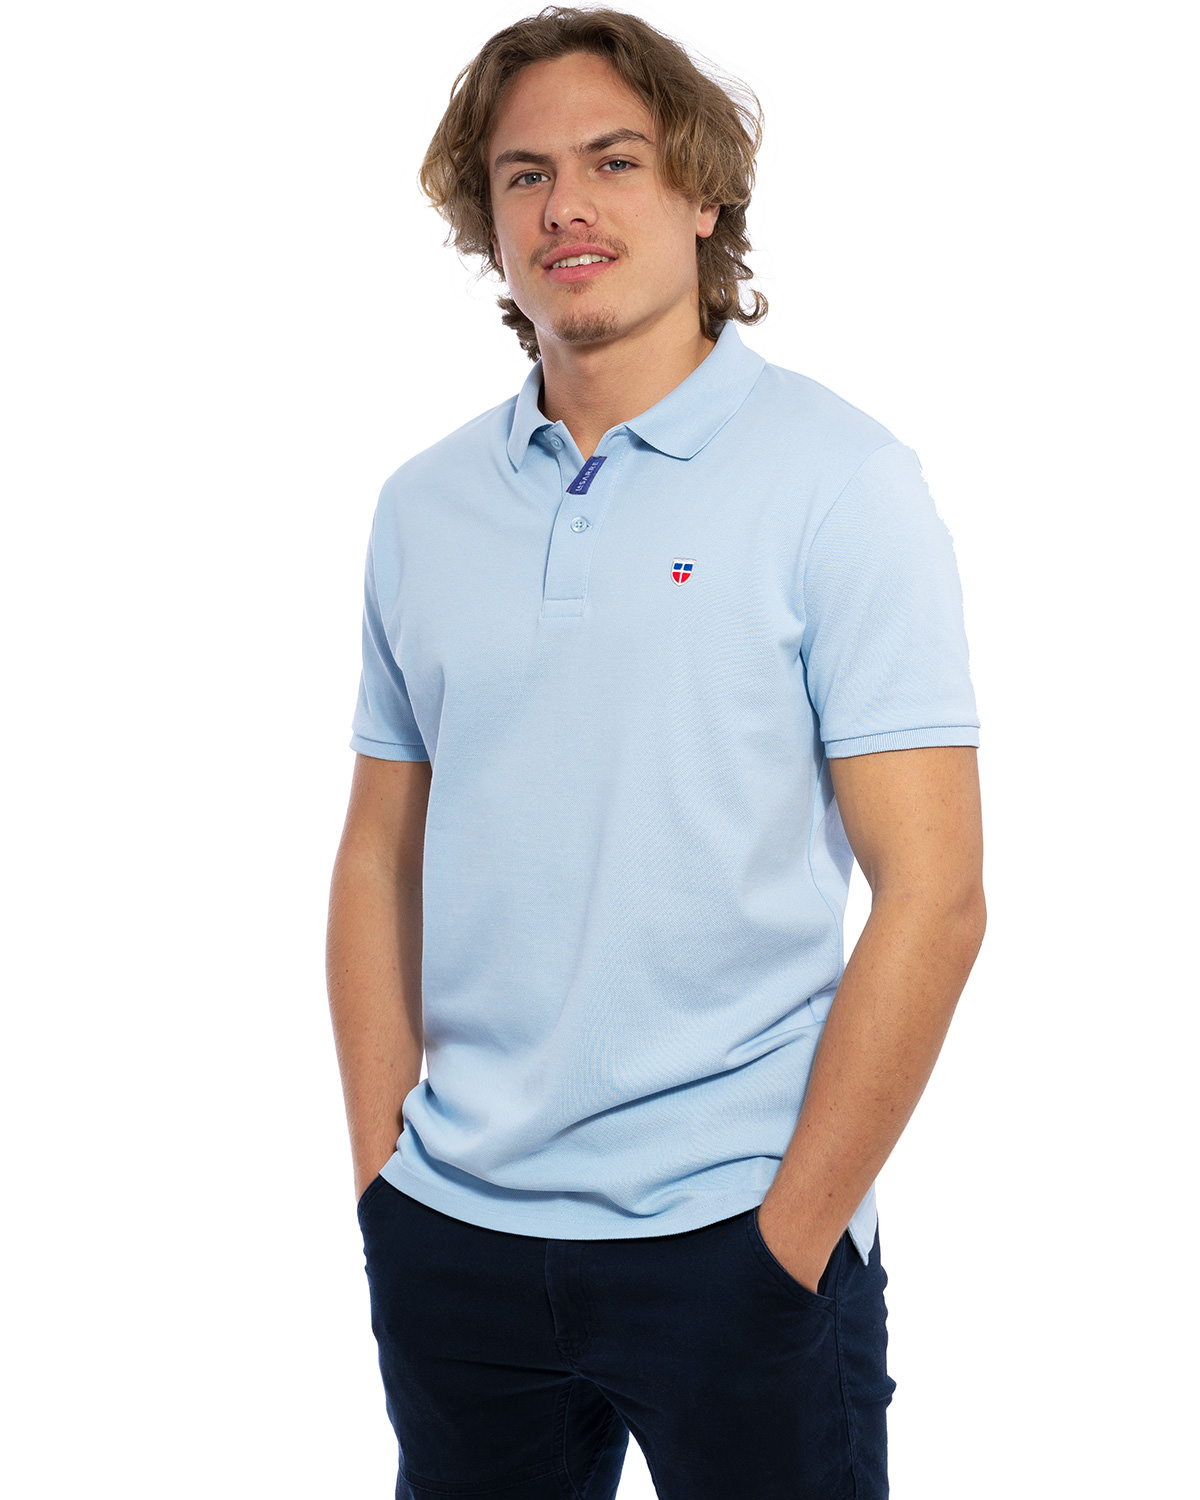 Seiten-Ansicht des hochwertig bestickten Männer Polo Shirt „MARCO“ in der besonderen Farbe Azure von der Saarland Marke Lasarre mit dem LA SARRE Wappen in Blau, Weiß, Rot auf der linken Brust und dem blauen LA SARRE Markenzeichen am Saum